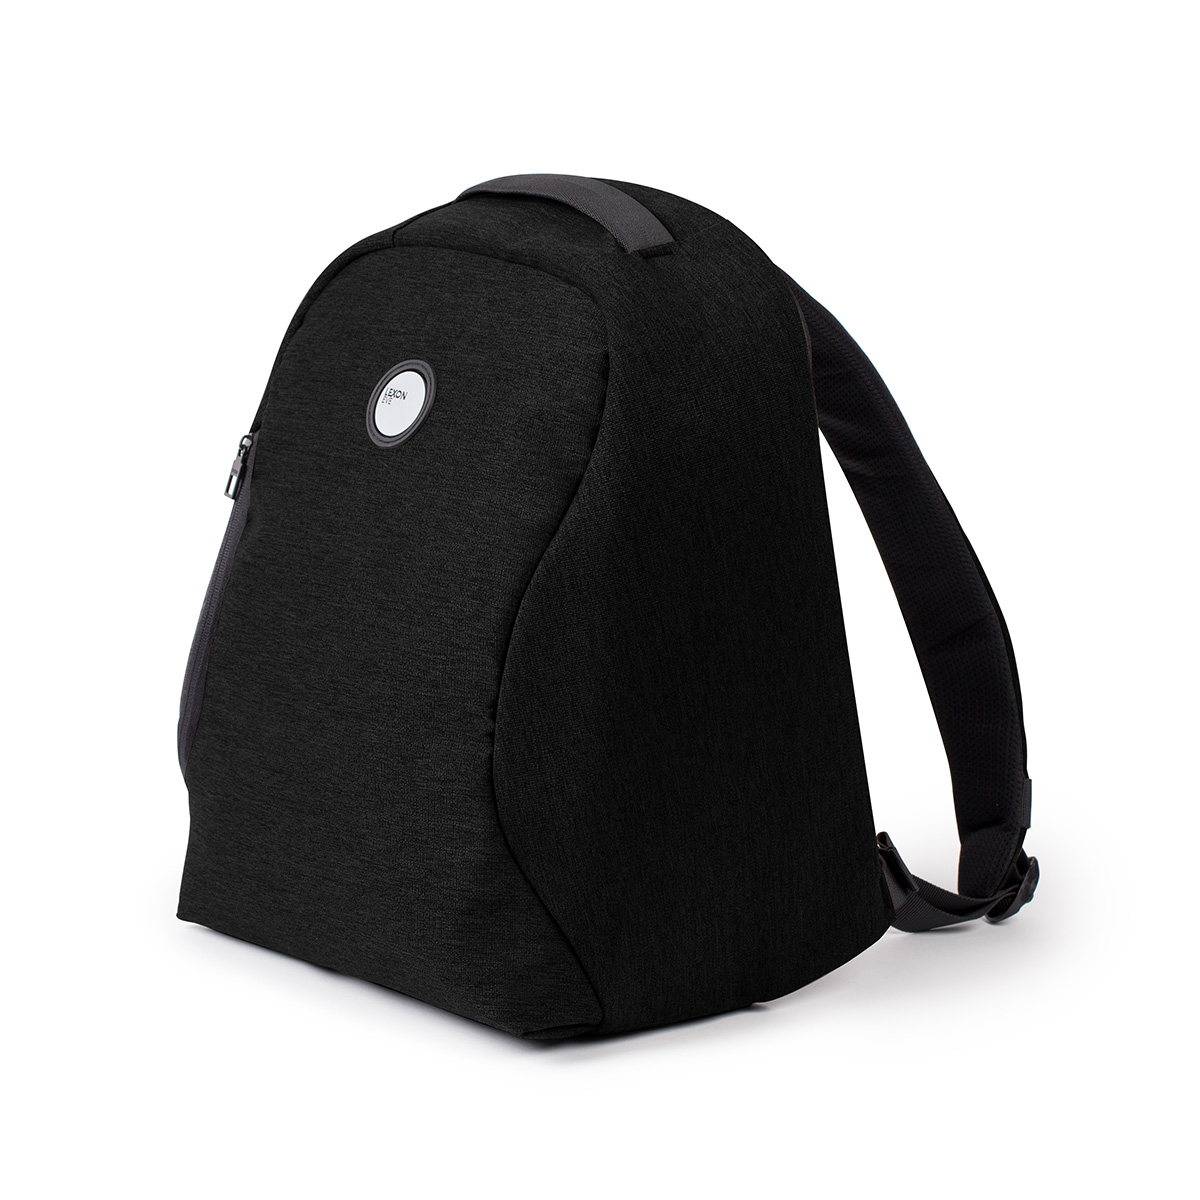 Eve Backpack LN2200